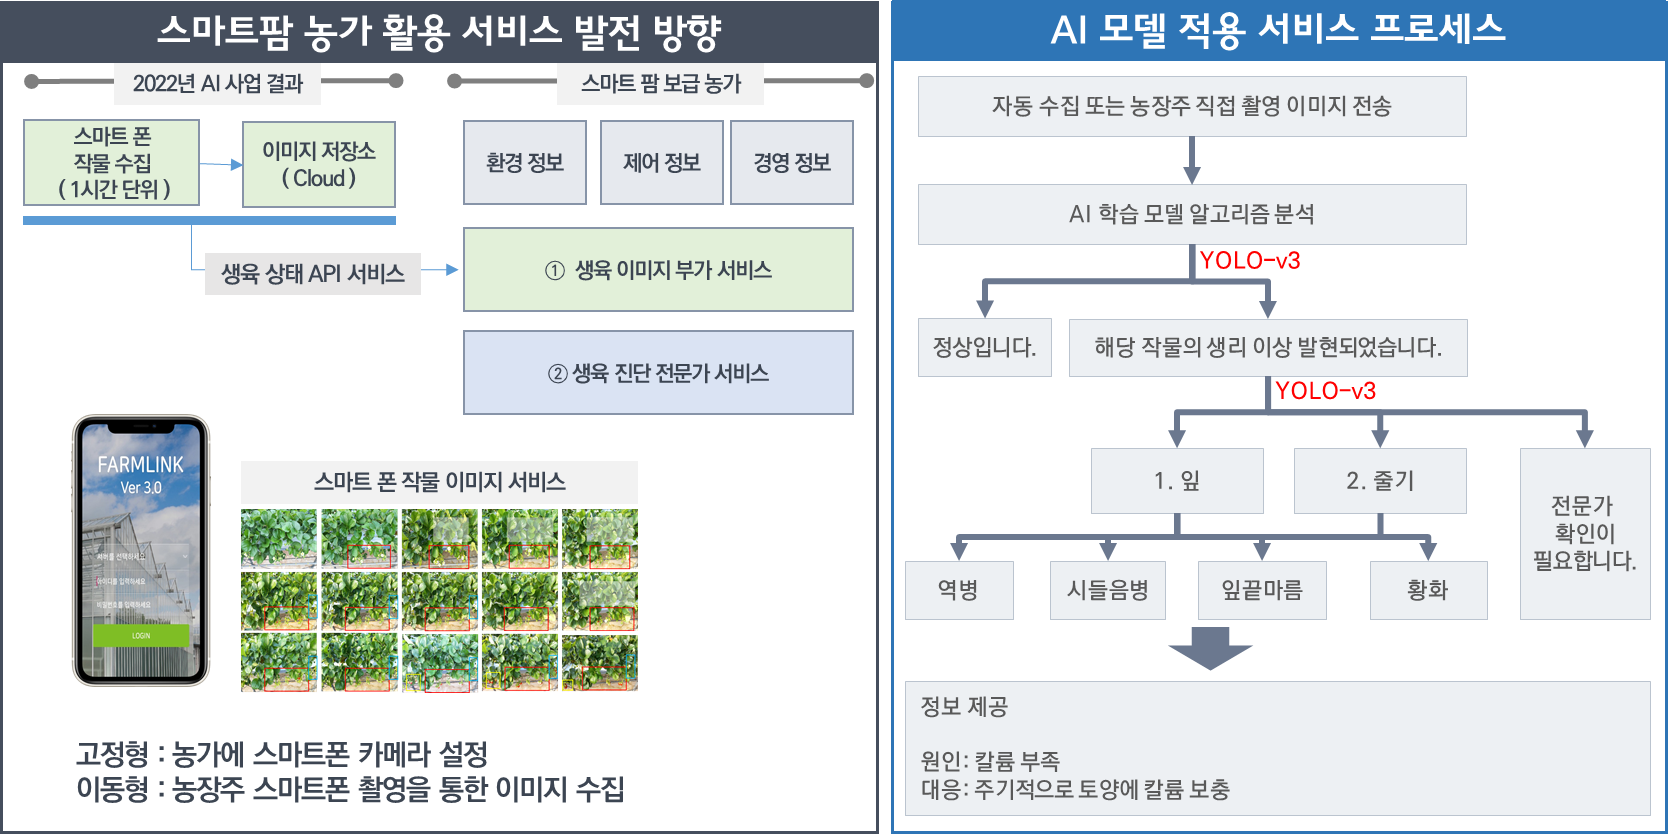 스마트팜 농가 활용 서비스 발전 방향, AI 모델 적용 서비스 프로세스 